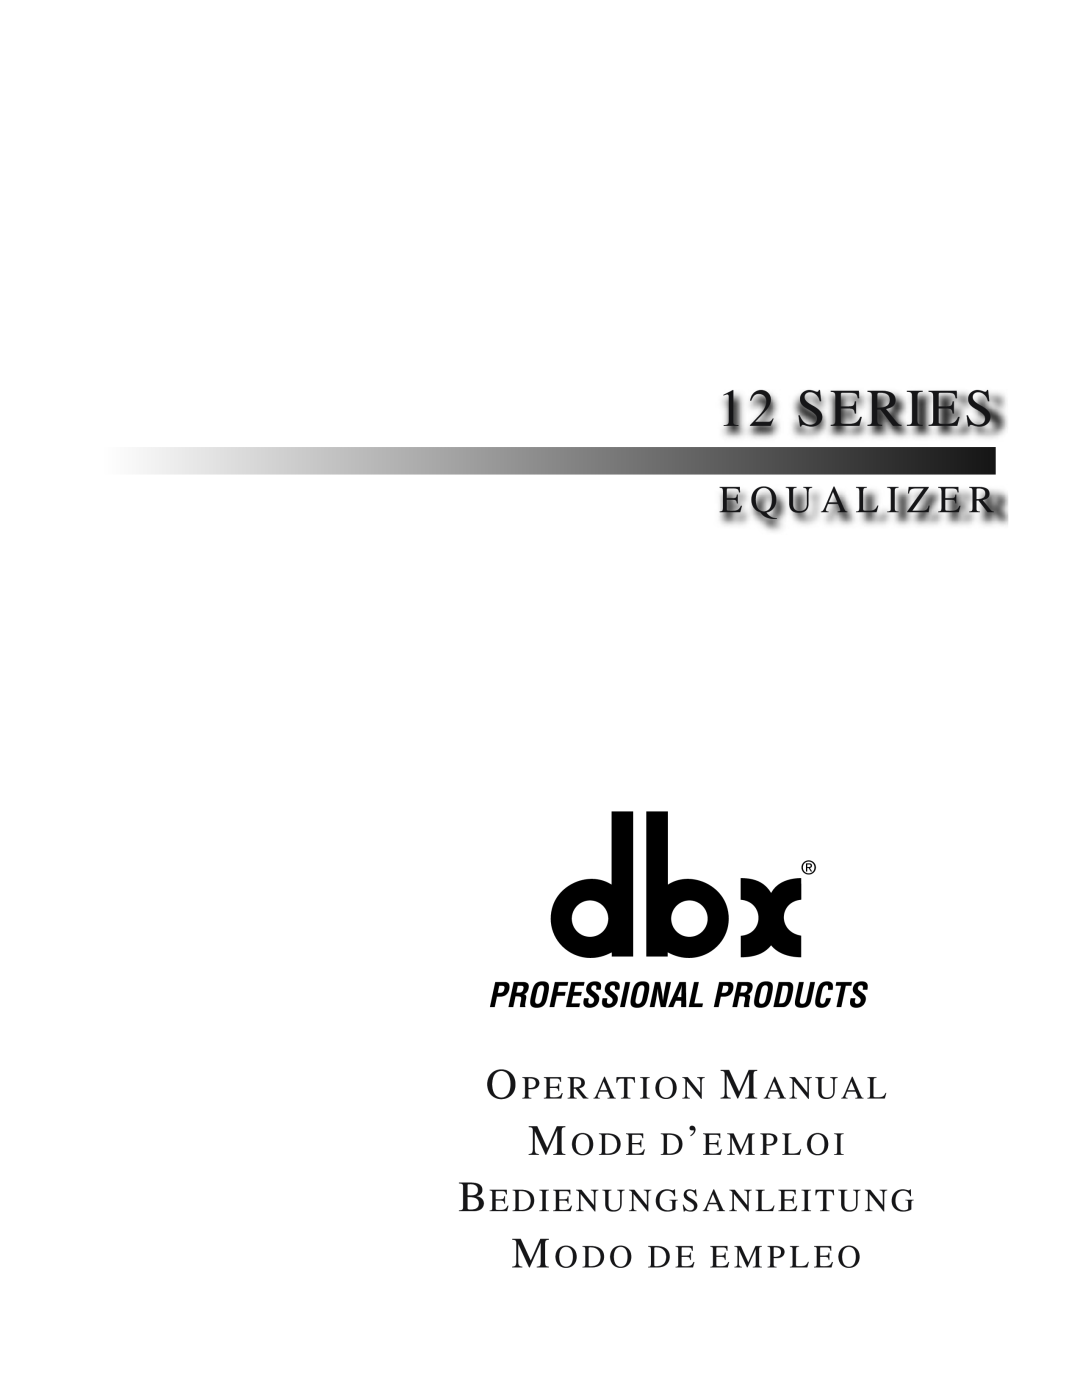 dbx Pro 12 Series operation manual E Q U A L I Z E R, O P E R At I O N M Anual M O D E D’E M P L O 